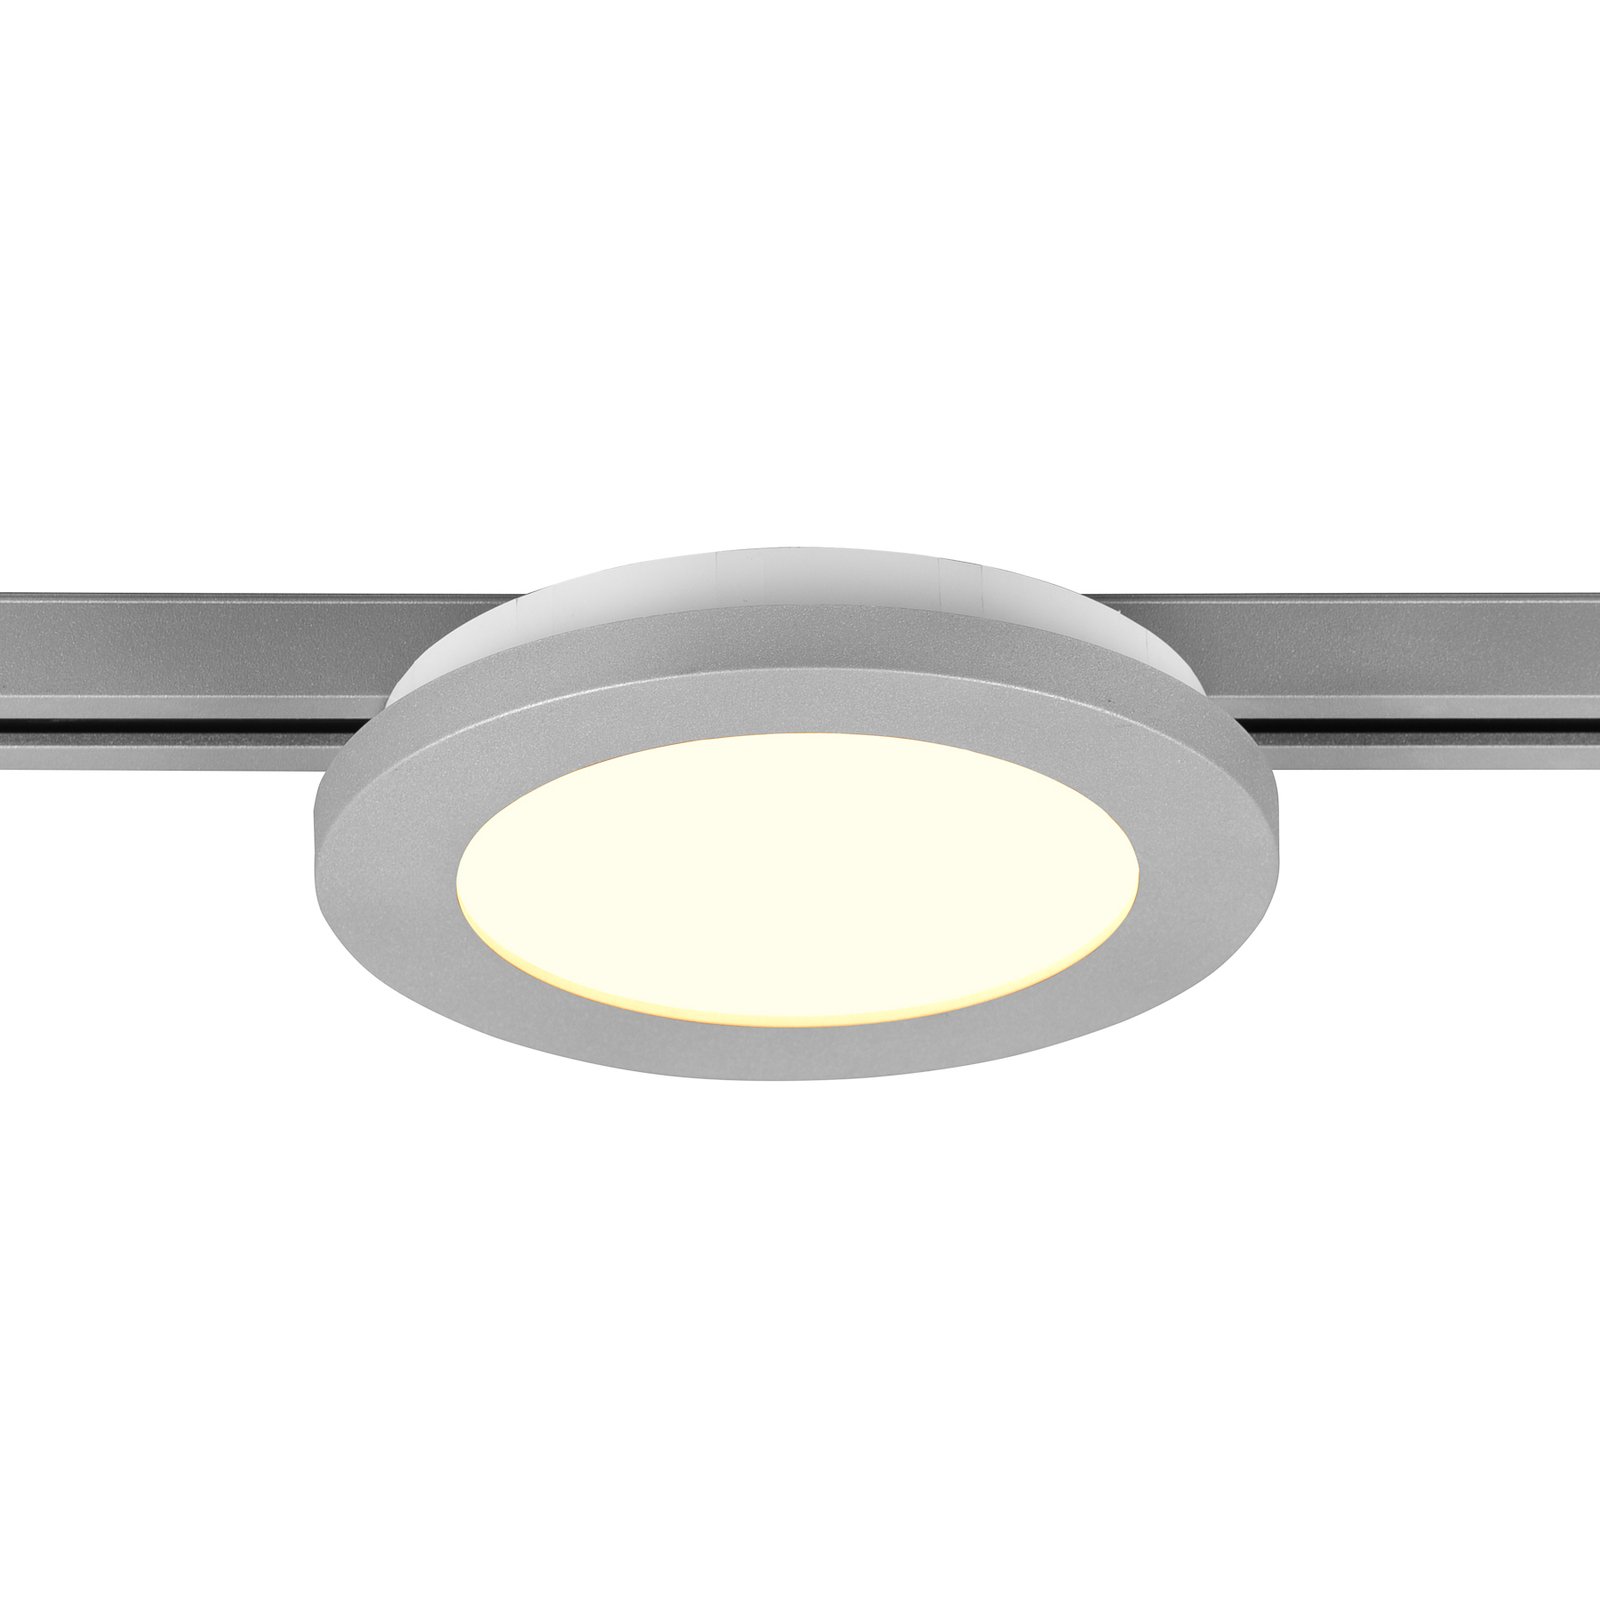 LED-loftlampe Camillus DUOline, Ø 17 cm, titanium